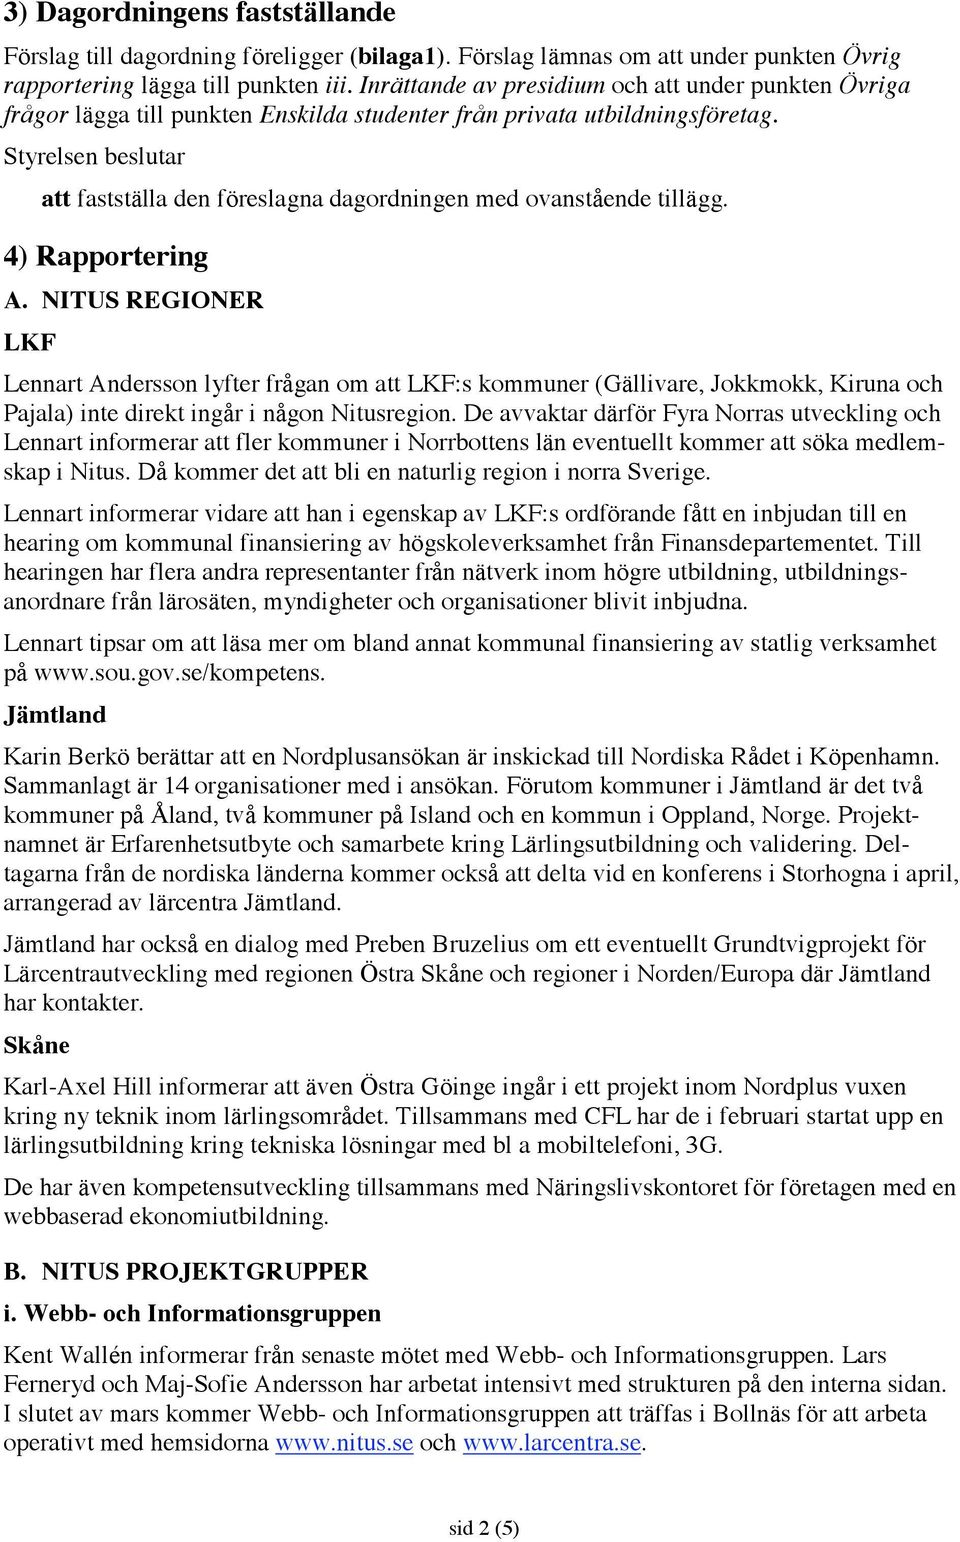 4) Rapportering A. NITUS REGIONER LKF Lennart Andersson lyfter frågan om att LKF:s kommuner (Gällivare, Jokkmokk, Kiruna och Pajala) inte direkt ingår i någon Nitusregion.